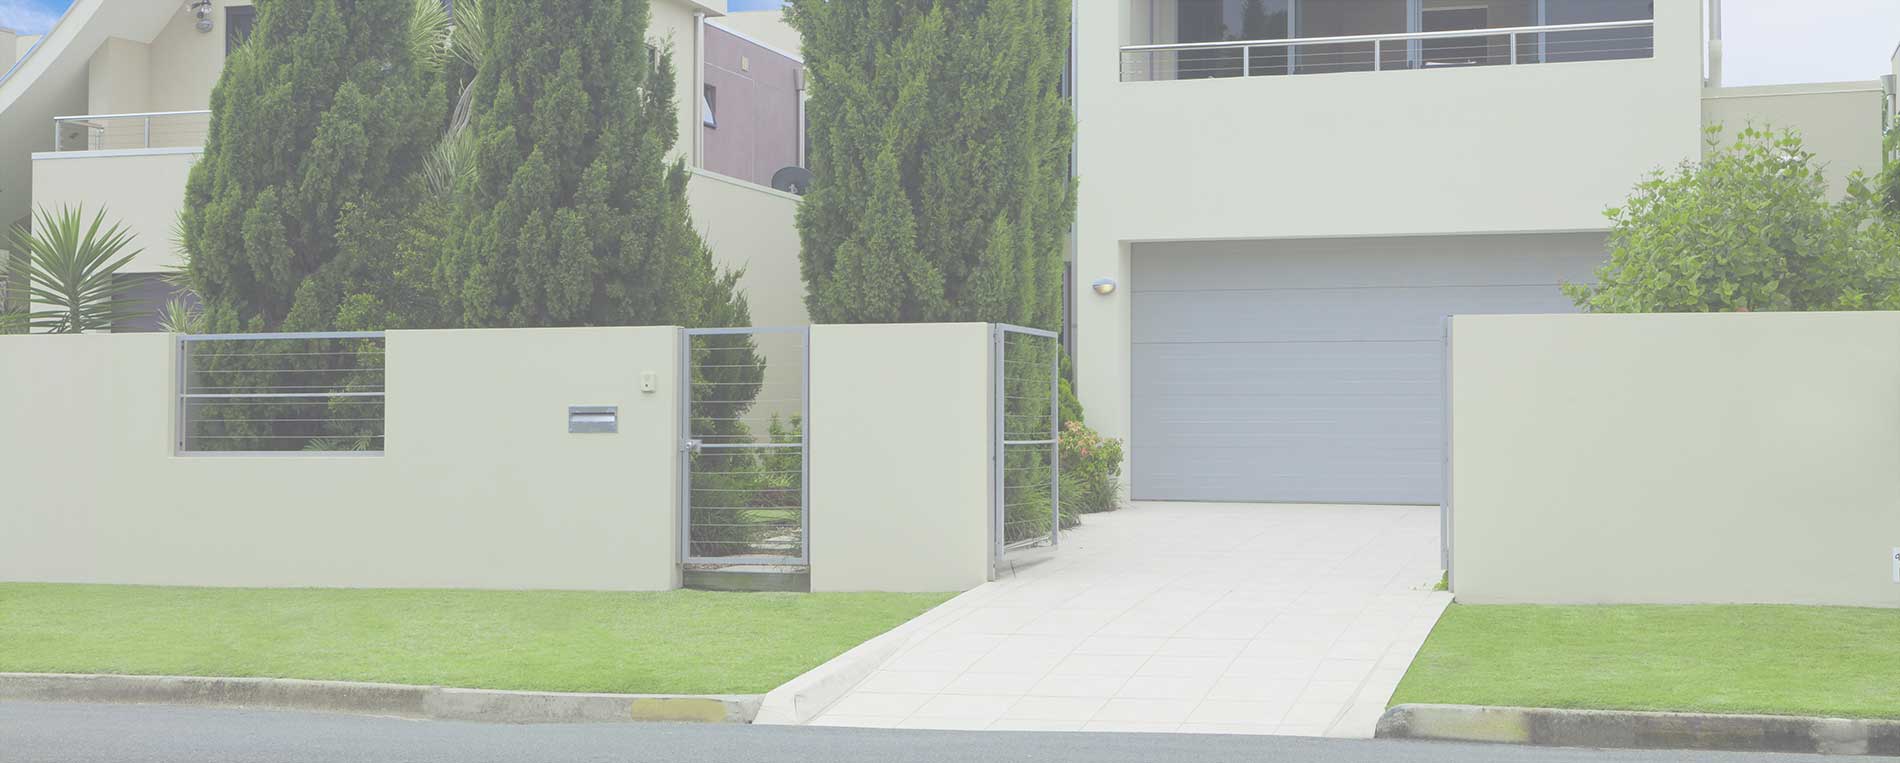 Garage Door Opener Replacement In Swann Estates Home